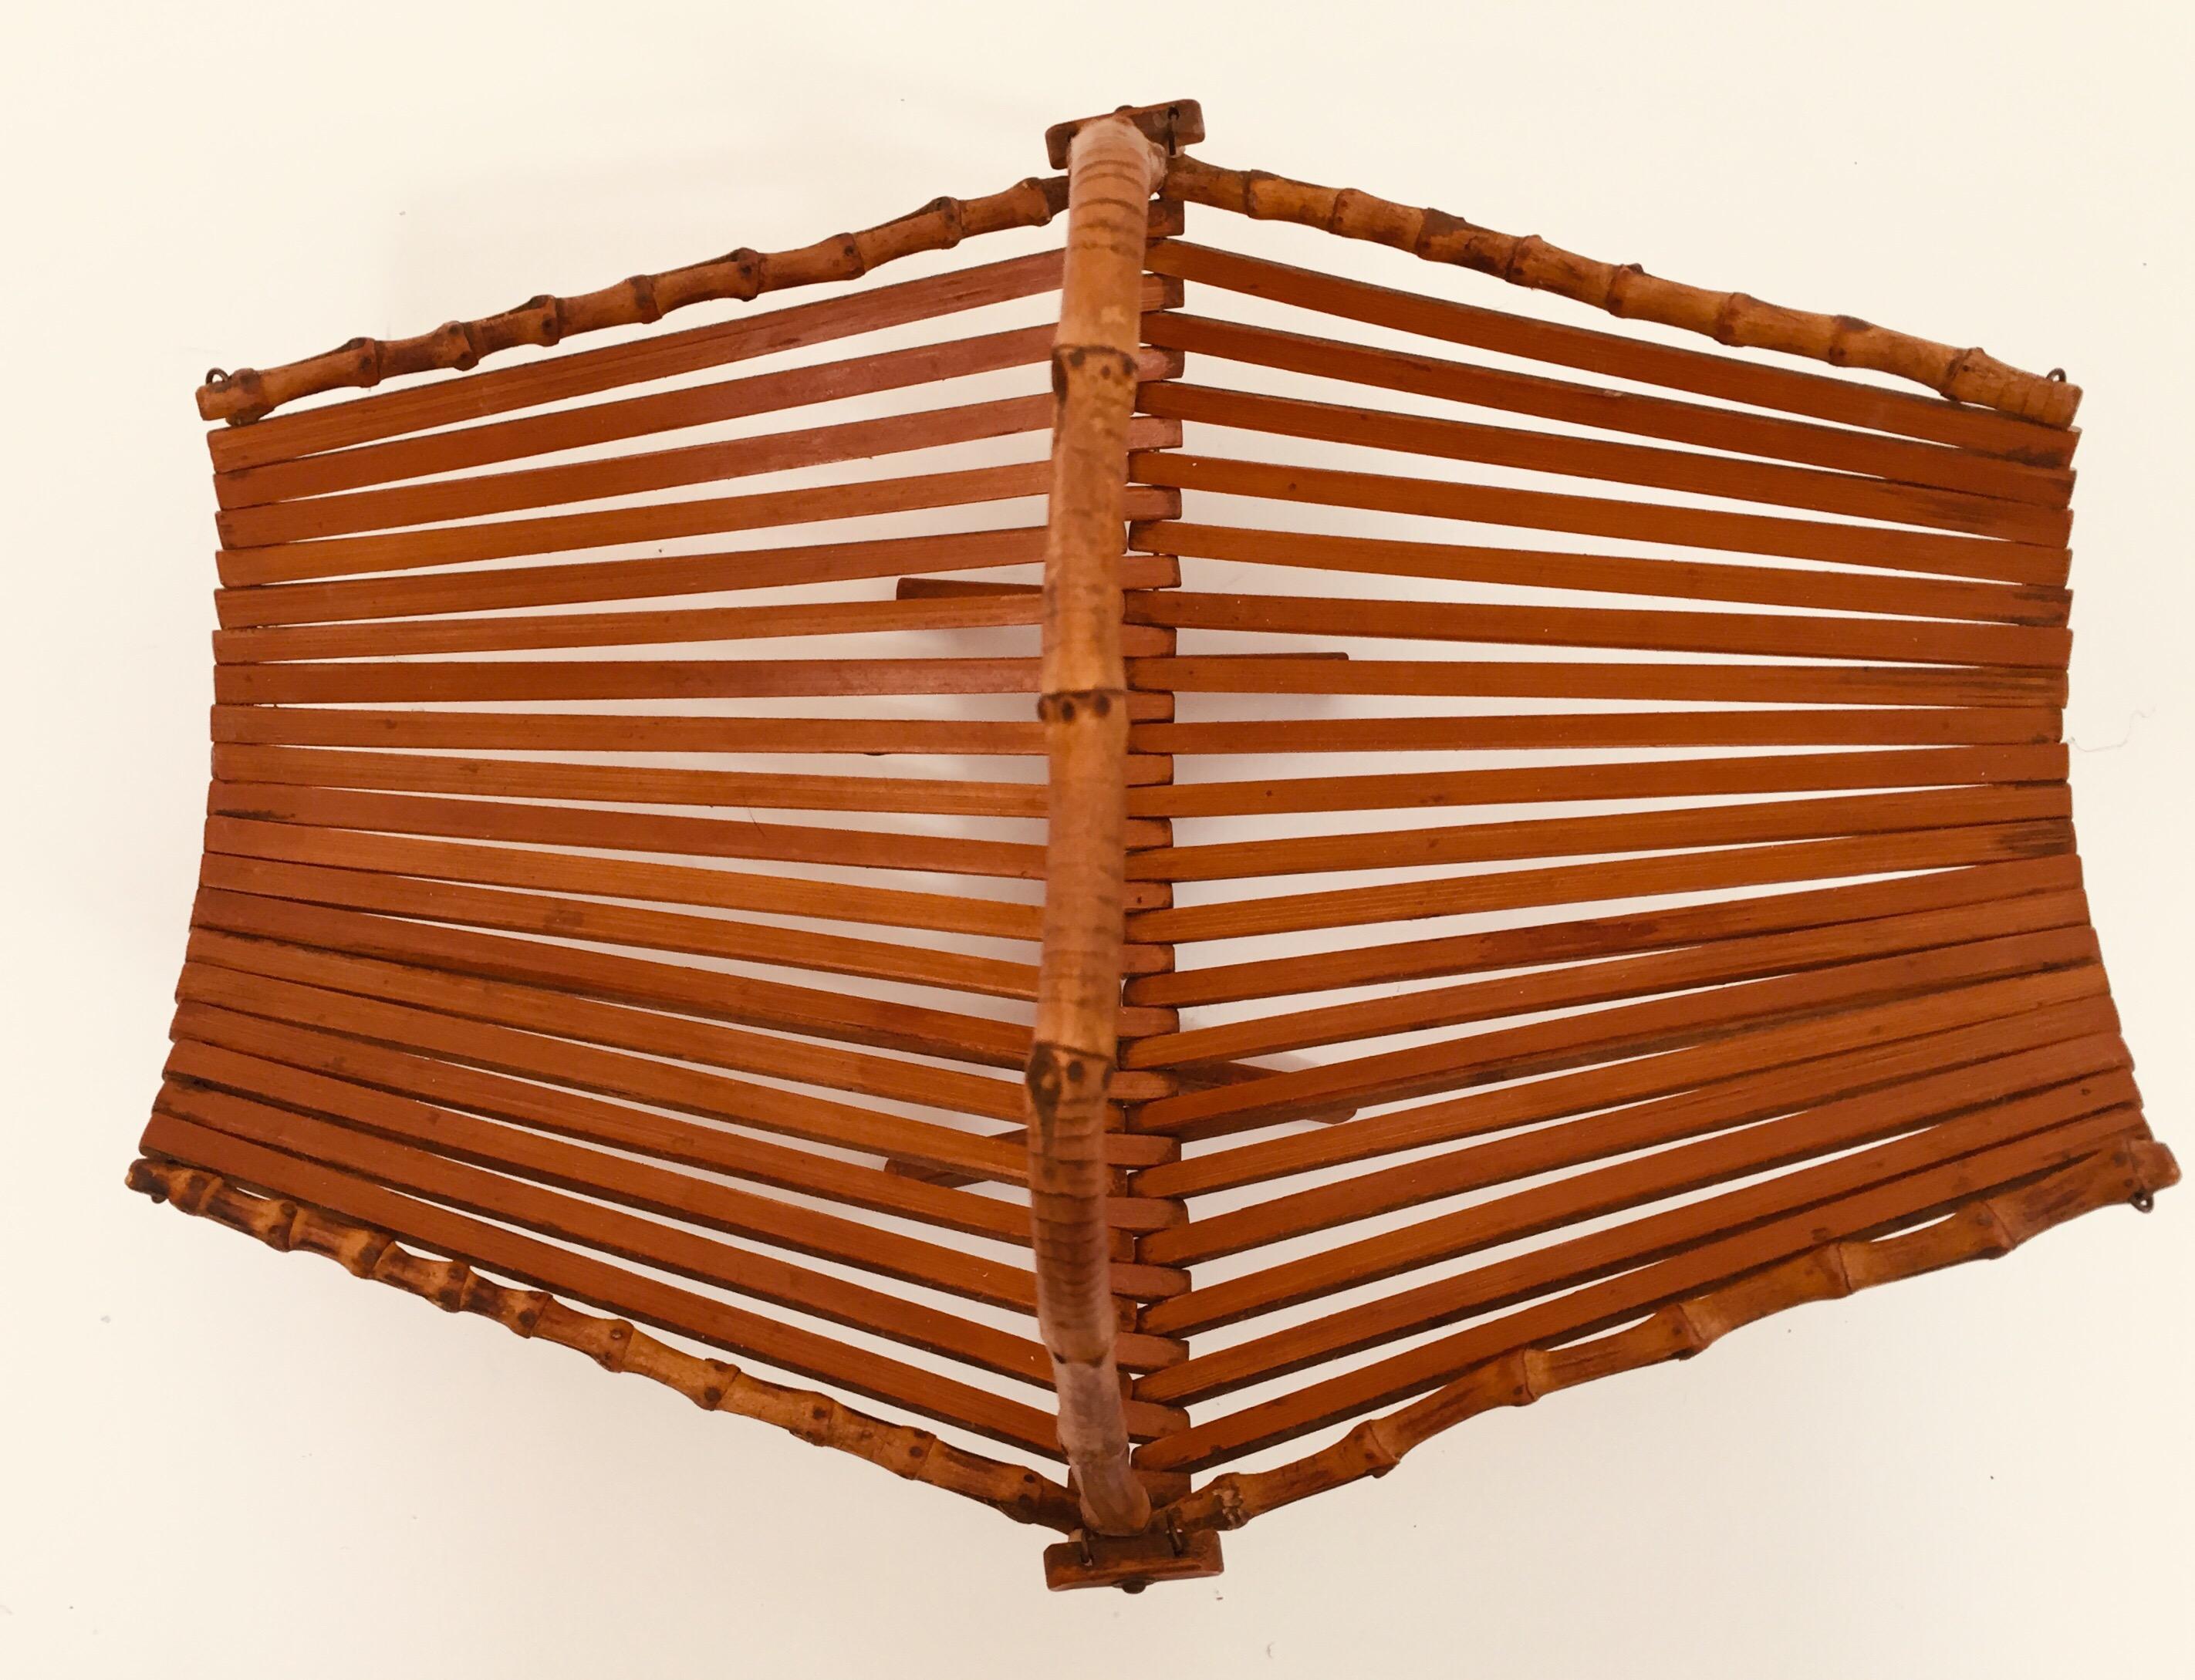 Midcentury Japanese Folding Bamboo Basket with Handle 1